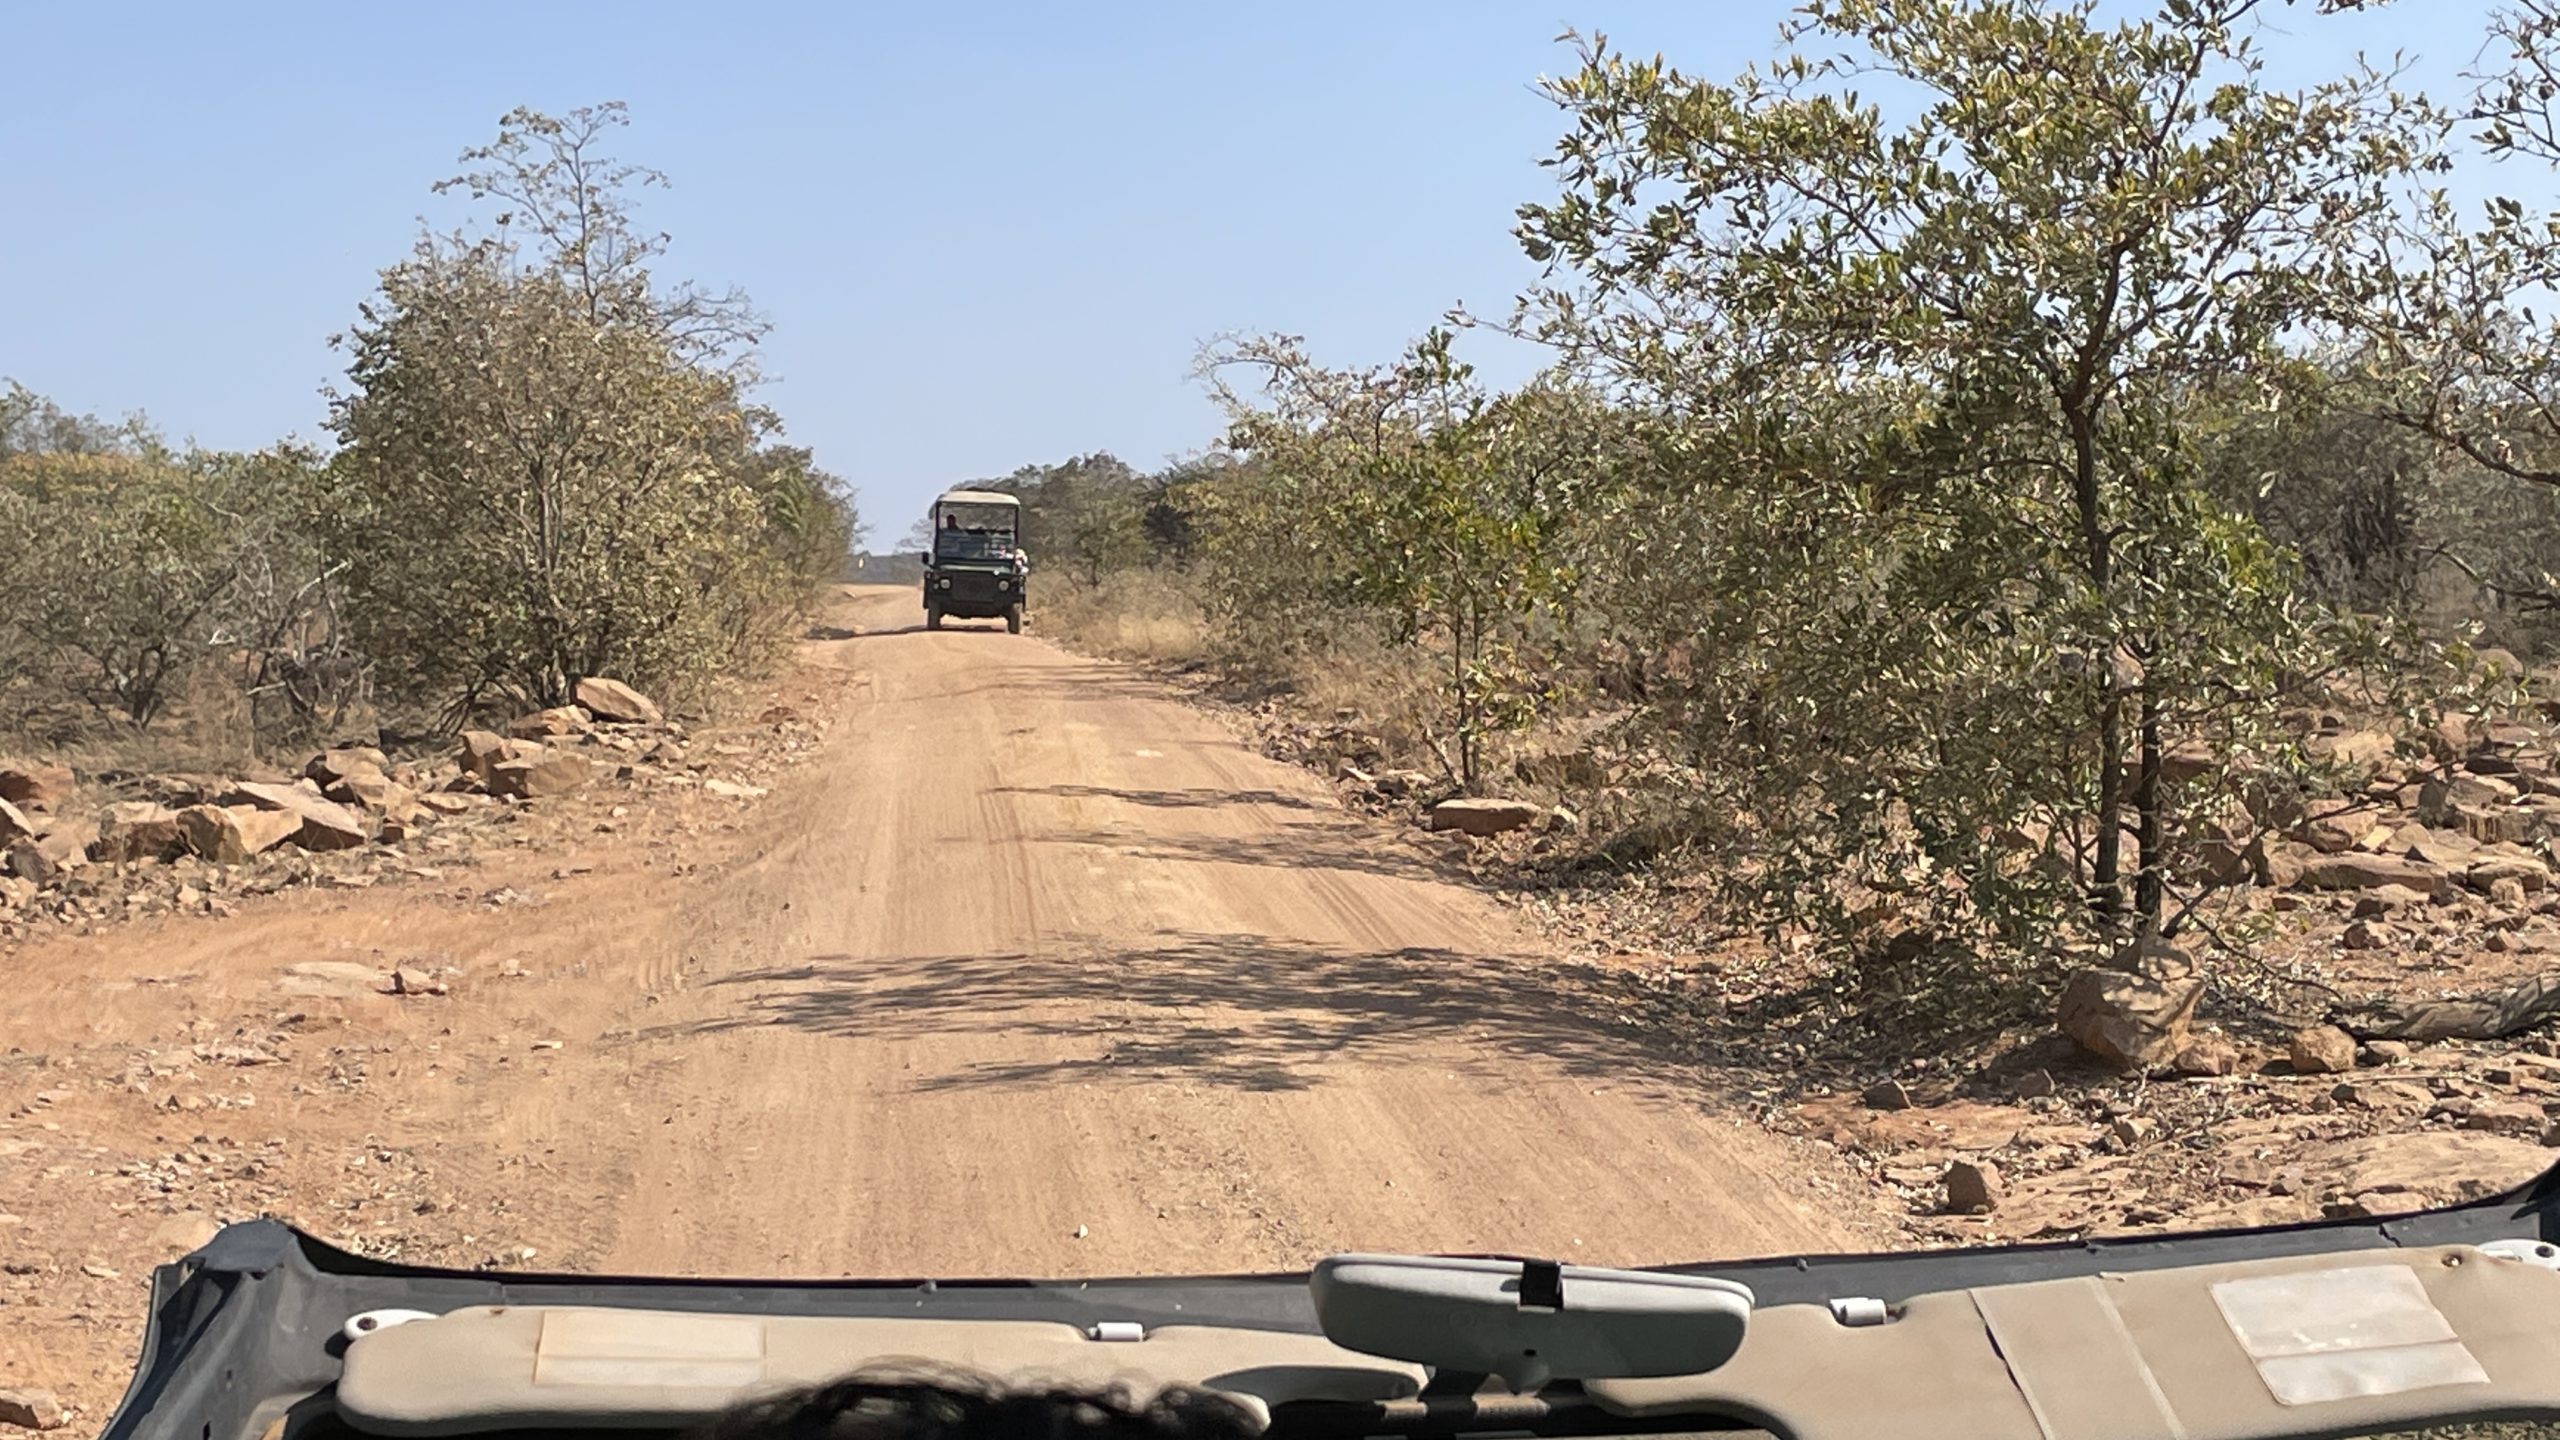 Sabatana Private Reserve Safari Vehicle Dirt Road Point Hacks by Daniel Sciberras